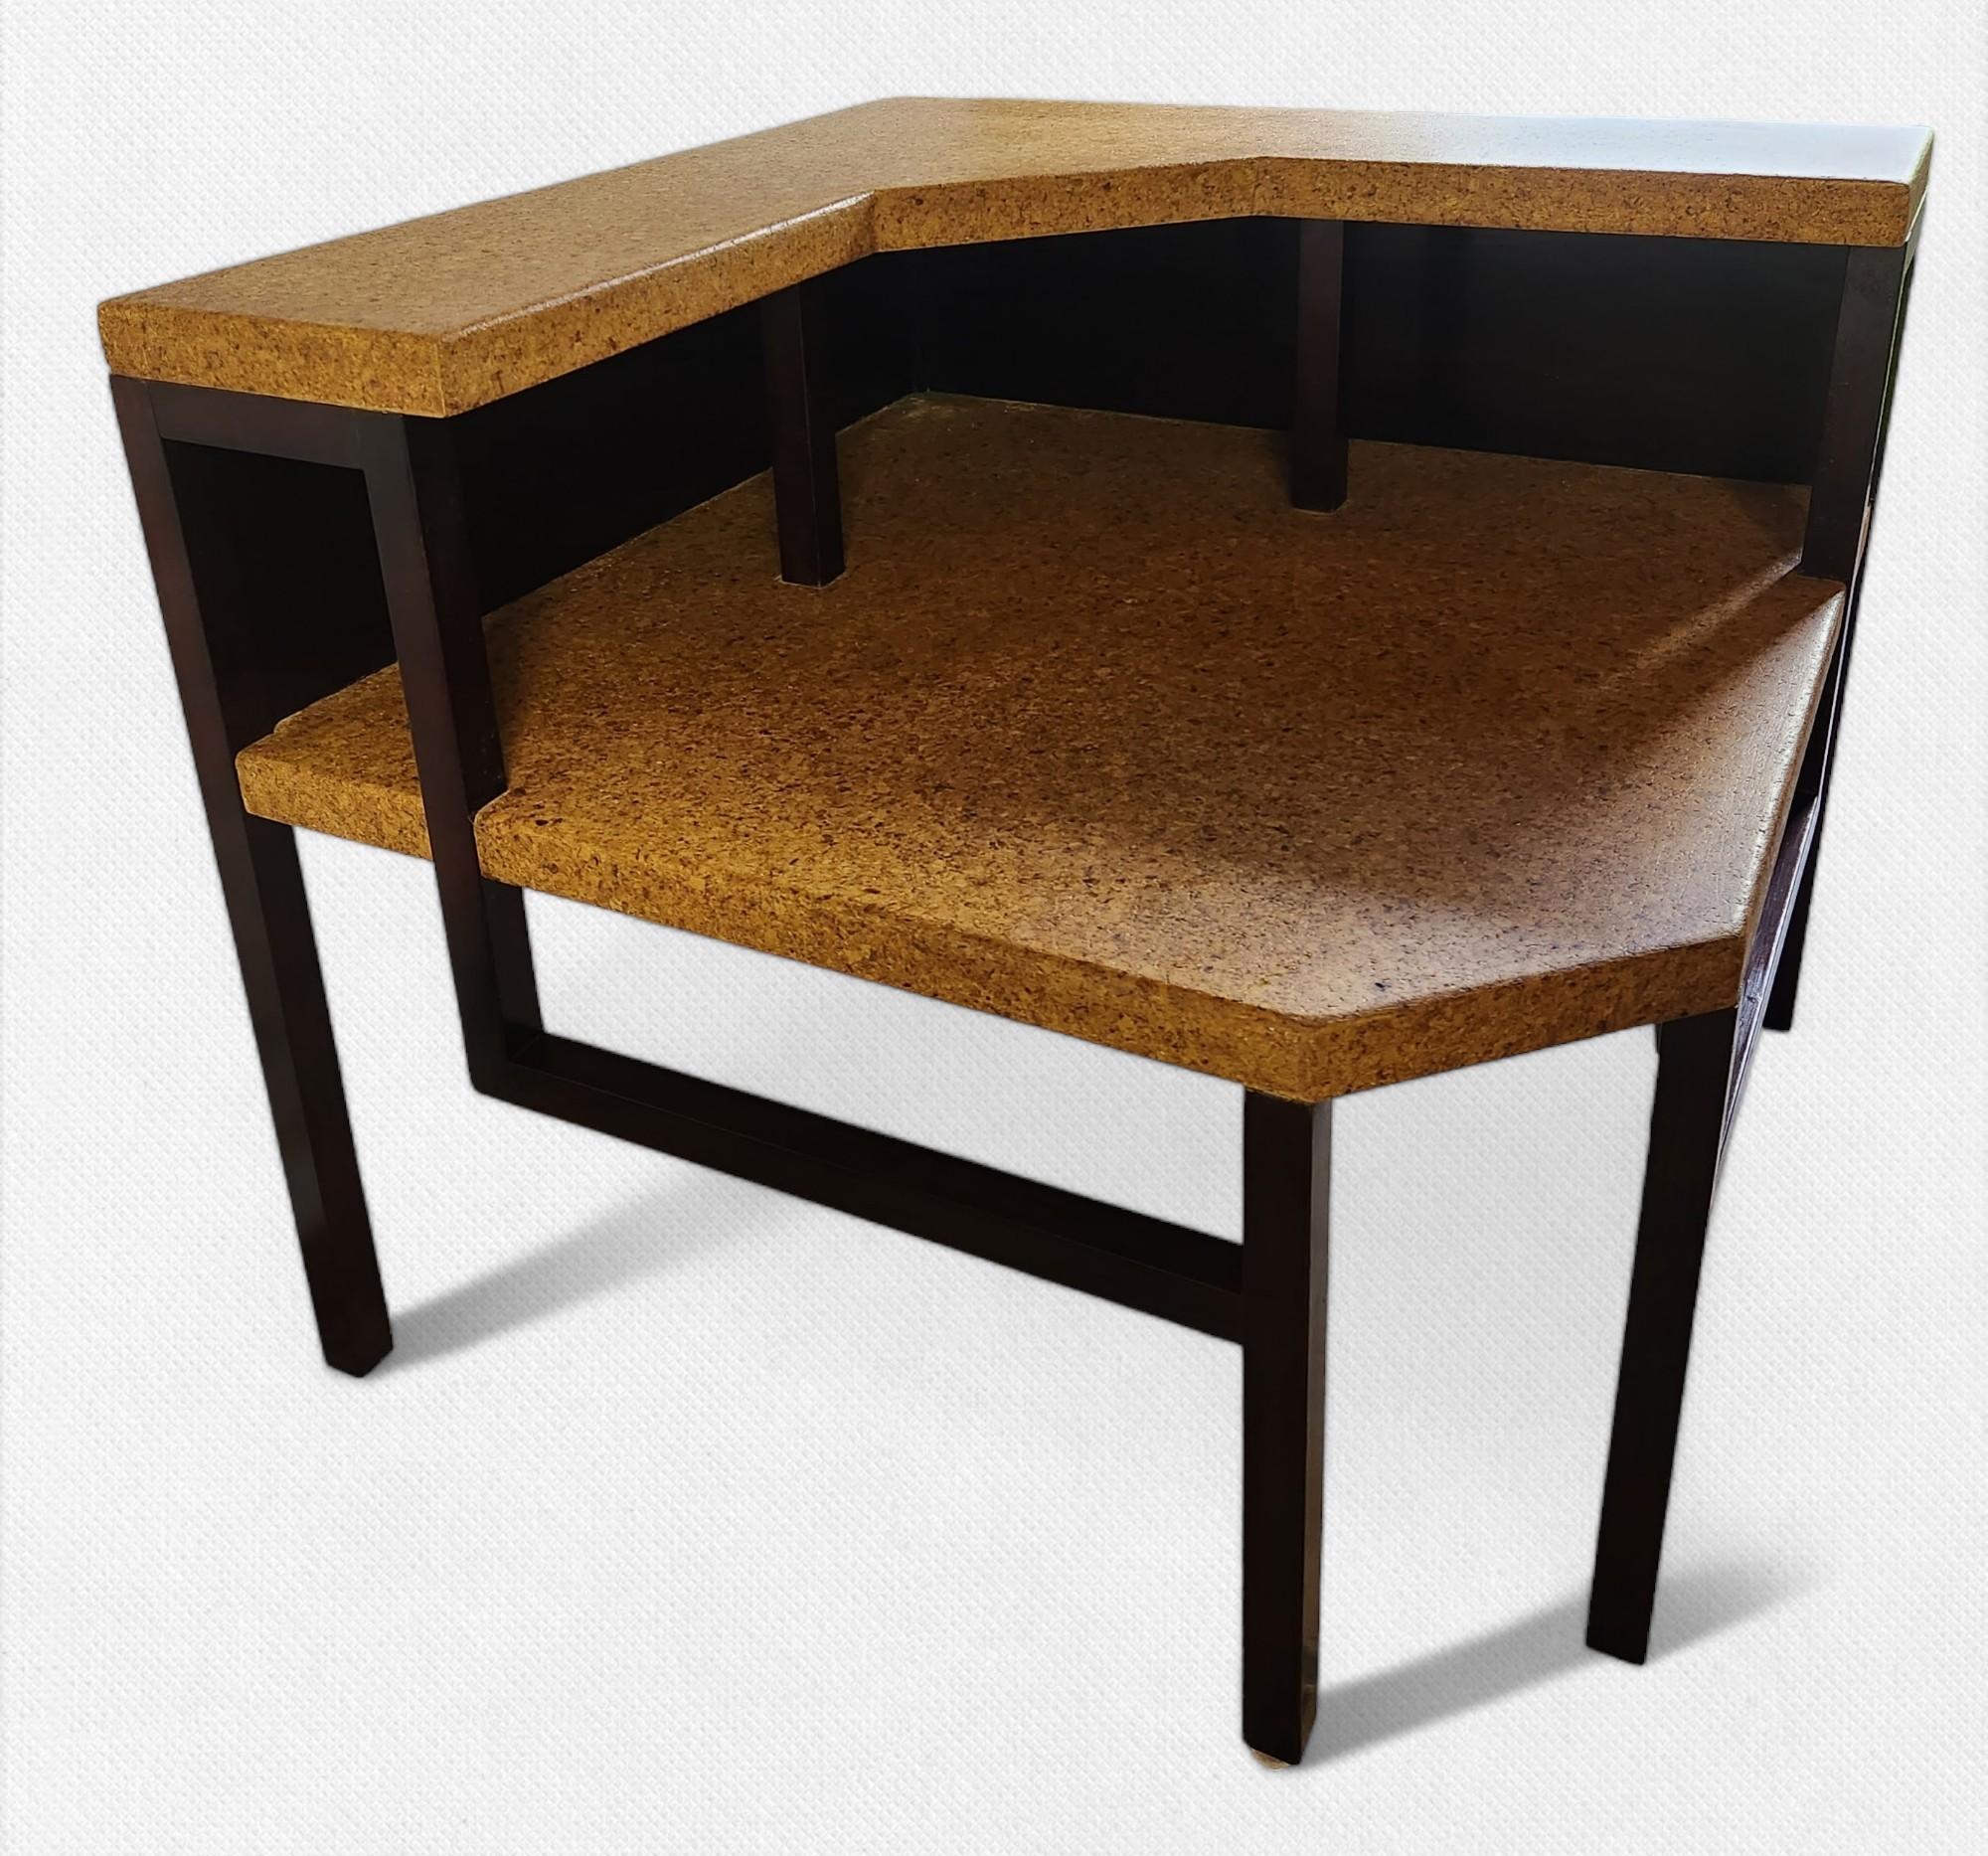 Ecktisch von Paul Frankl für die Johnson Furniture Company in Grand Rapids, Michigan, aus den 1950er Jahren.
Der Rahmen ist aus rosenholzgebeiztem Ahornholz mit klar lackierten Korkplatten.
In sehr gutem Zustand restauriert und ohne Probleme.